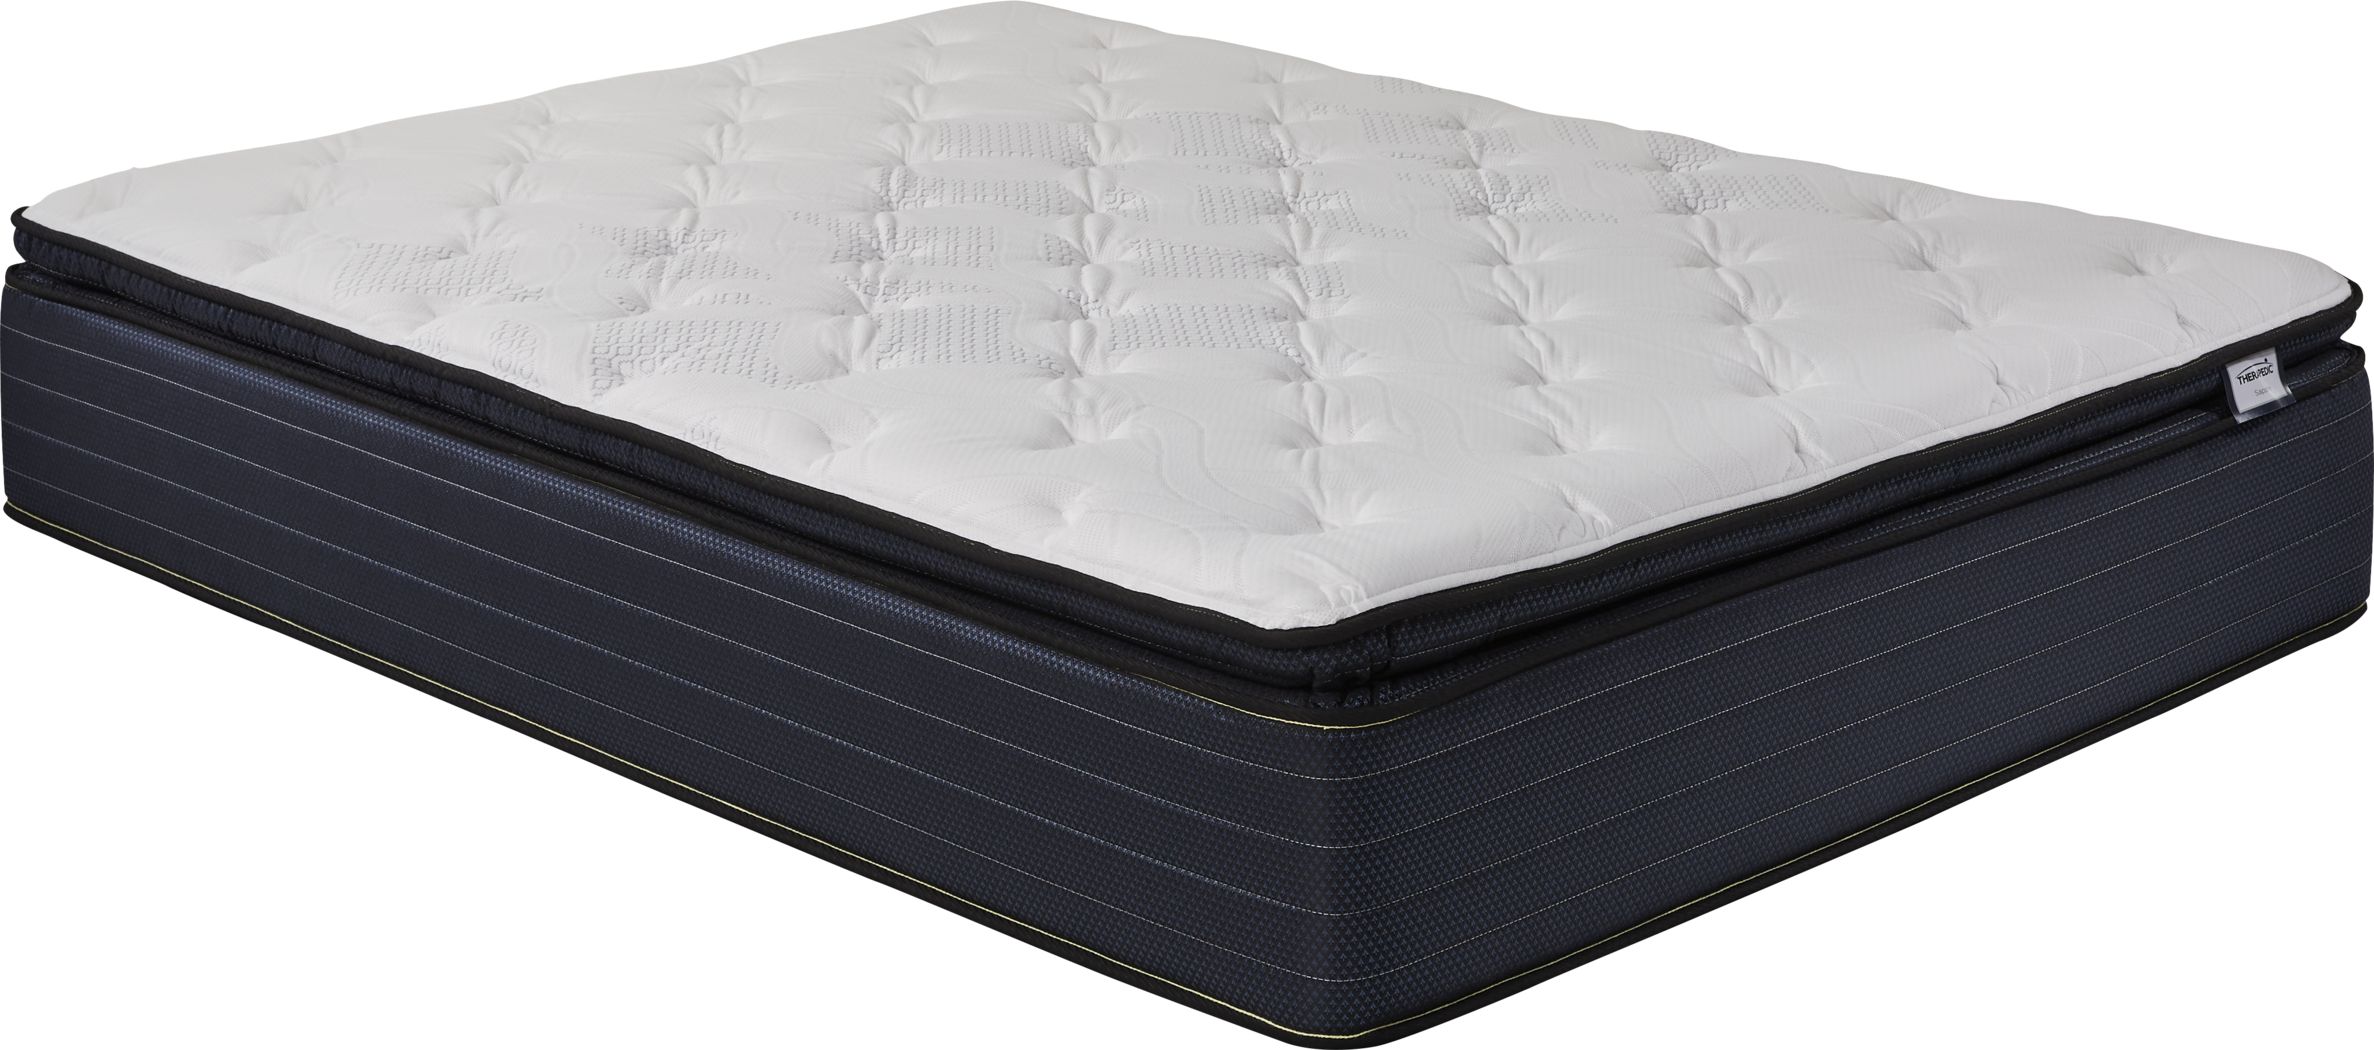 sapphire sleep dahlia mattress